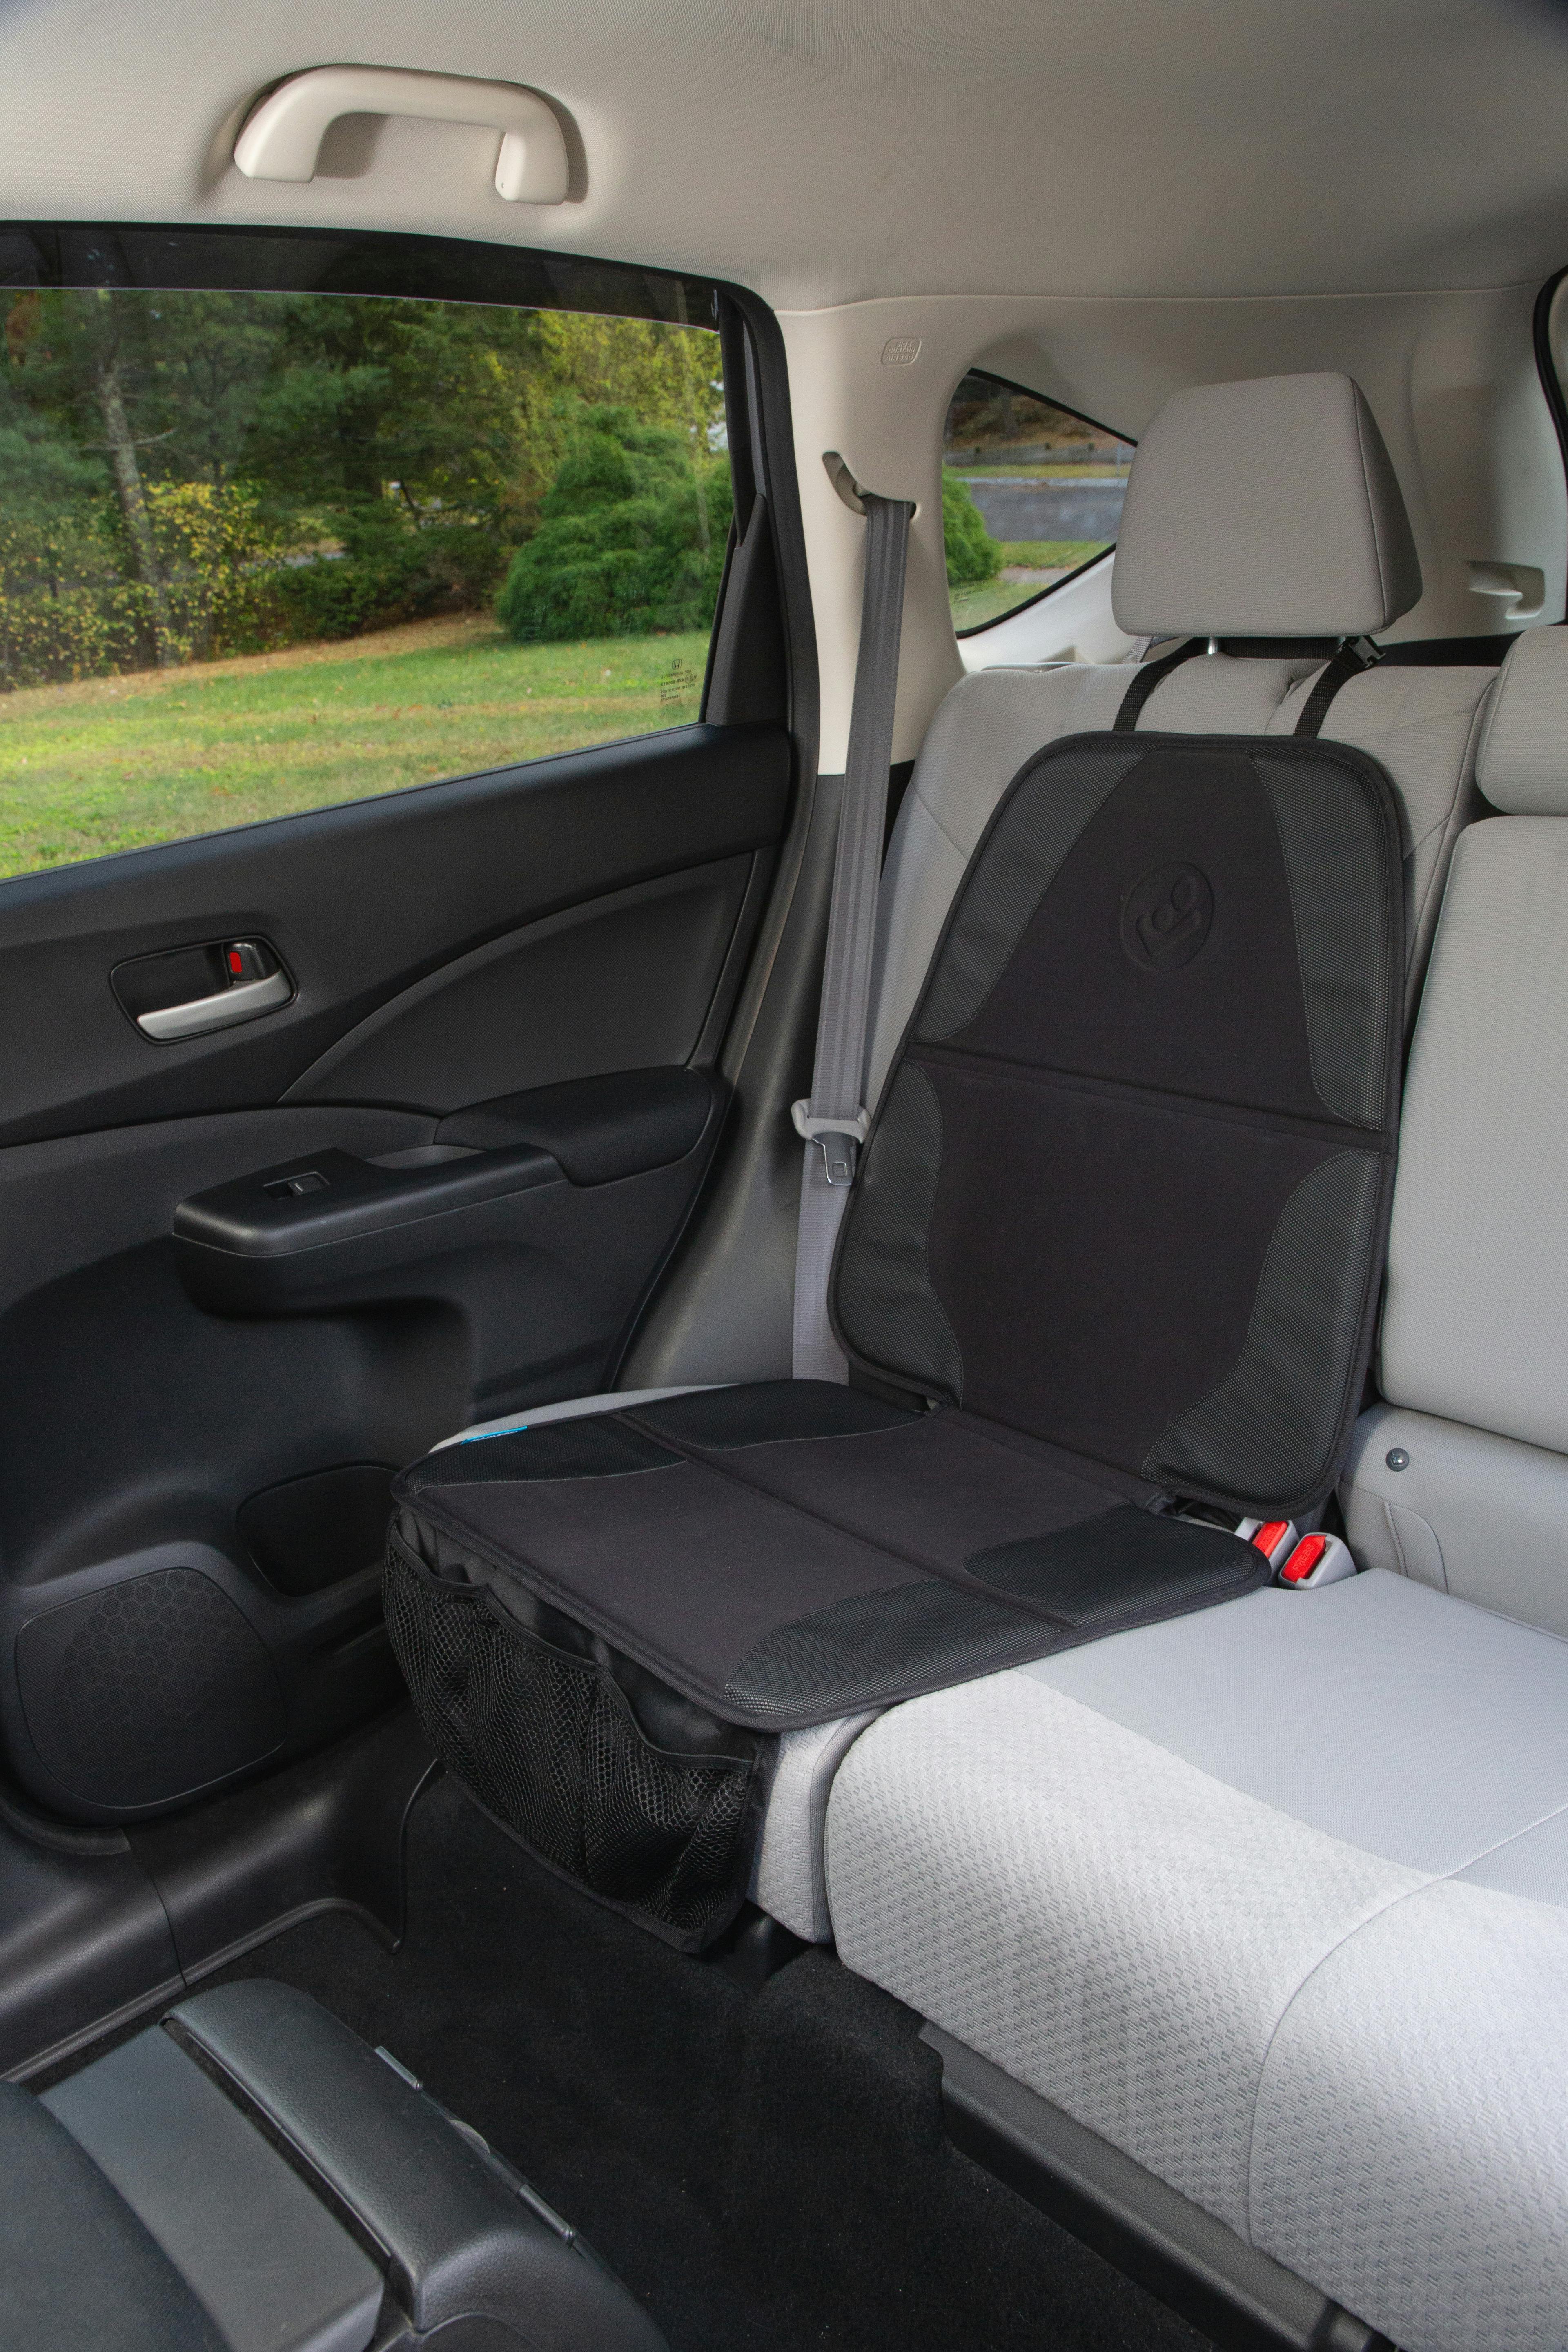 Maxi-Cosi Vehicle Seat Protector